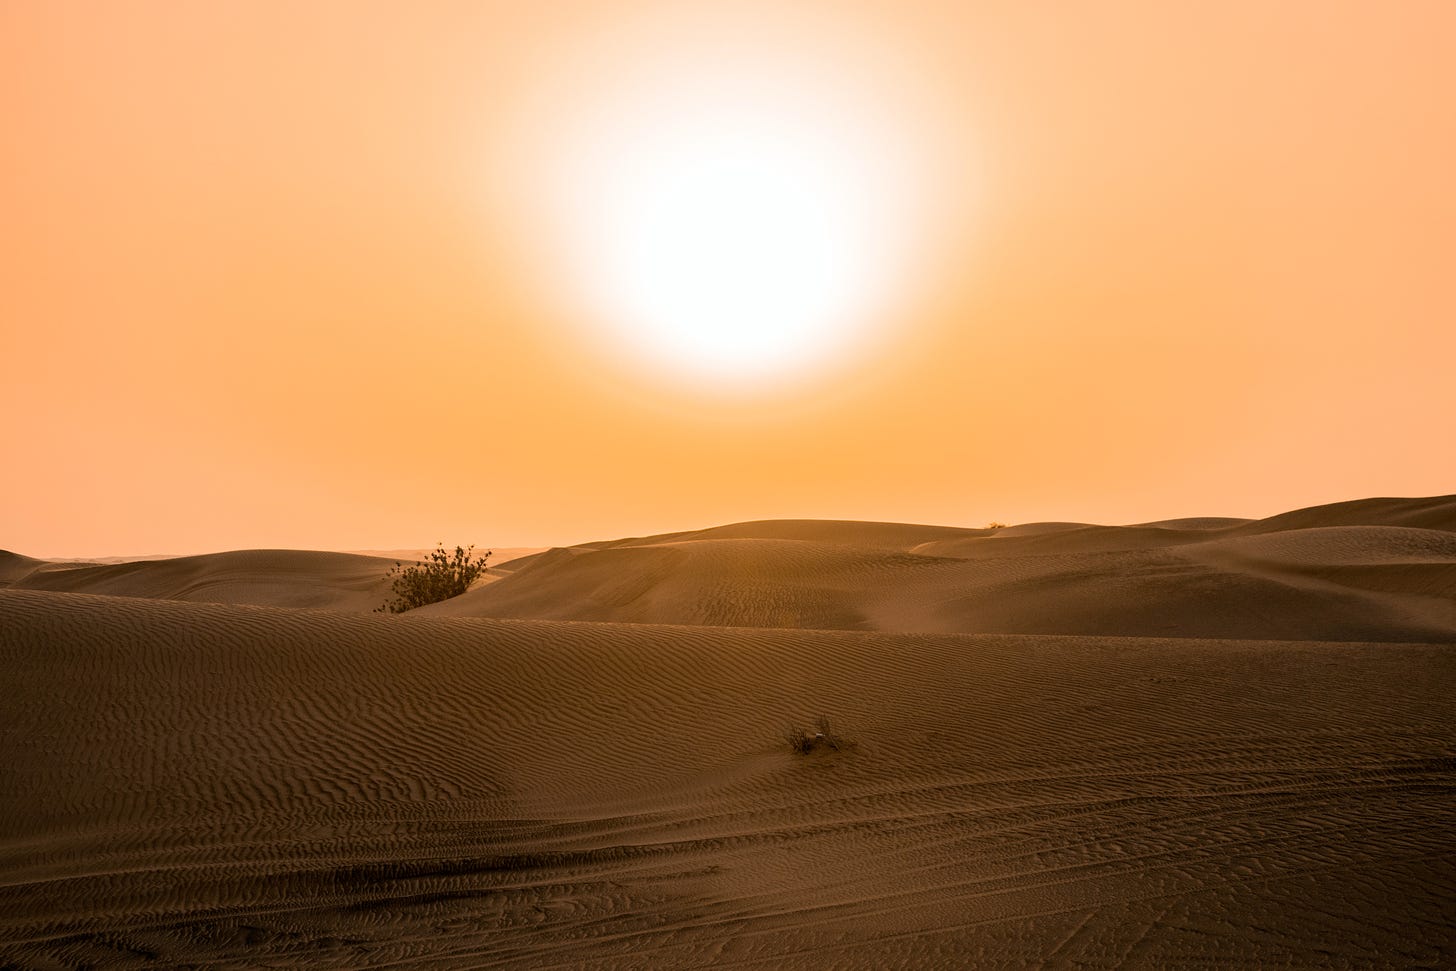 Blazing sun over a desert